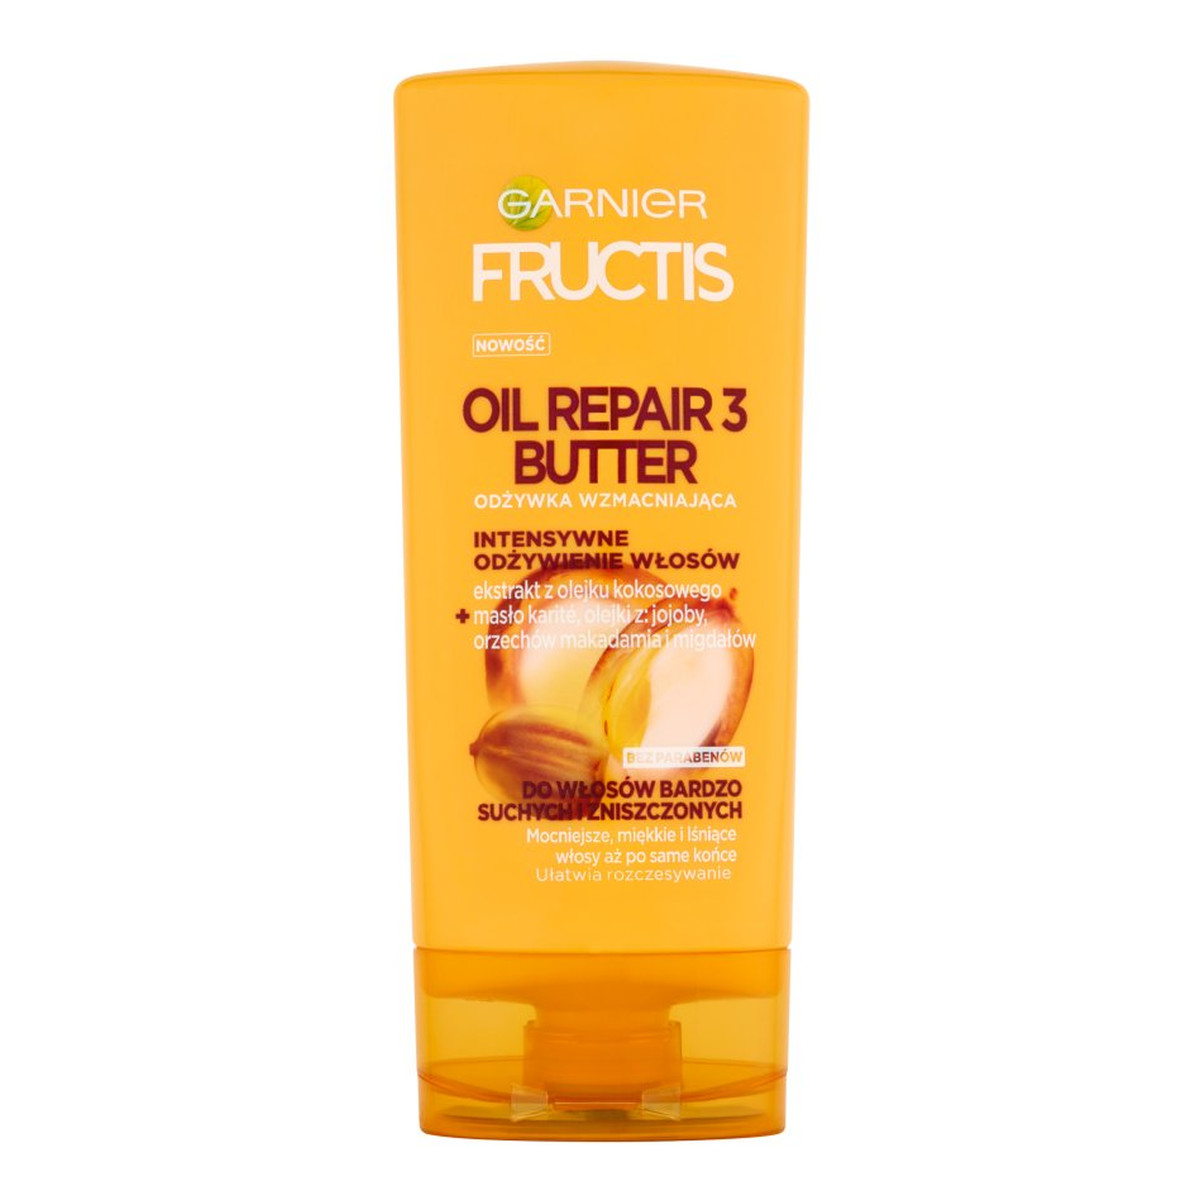 Garnier Fructis Oil Repair 3 Butter wzmacniająca Odżywka Do Włosów 200ml